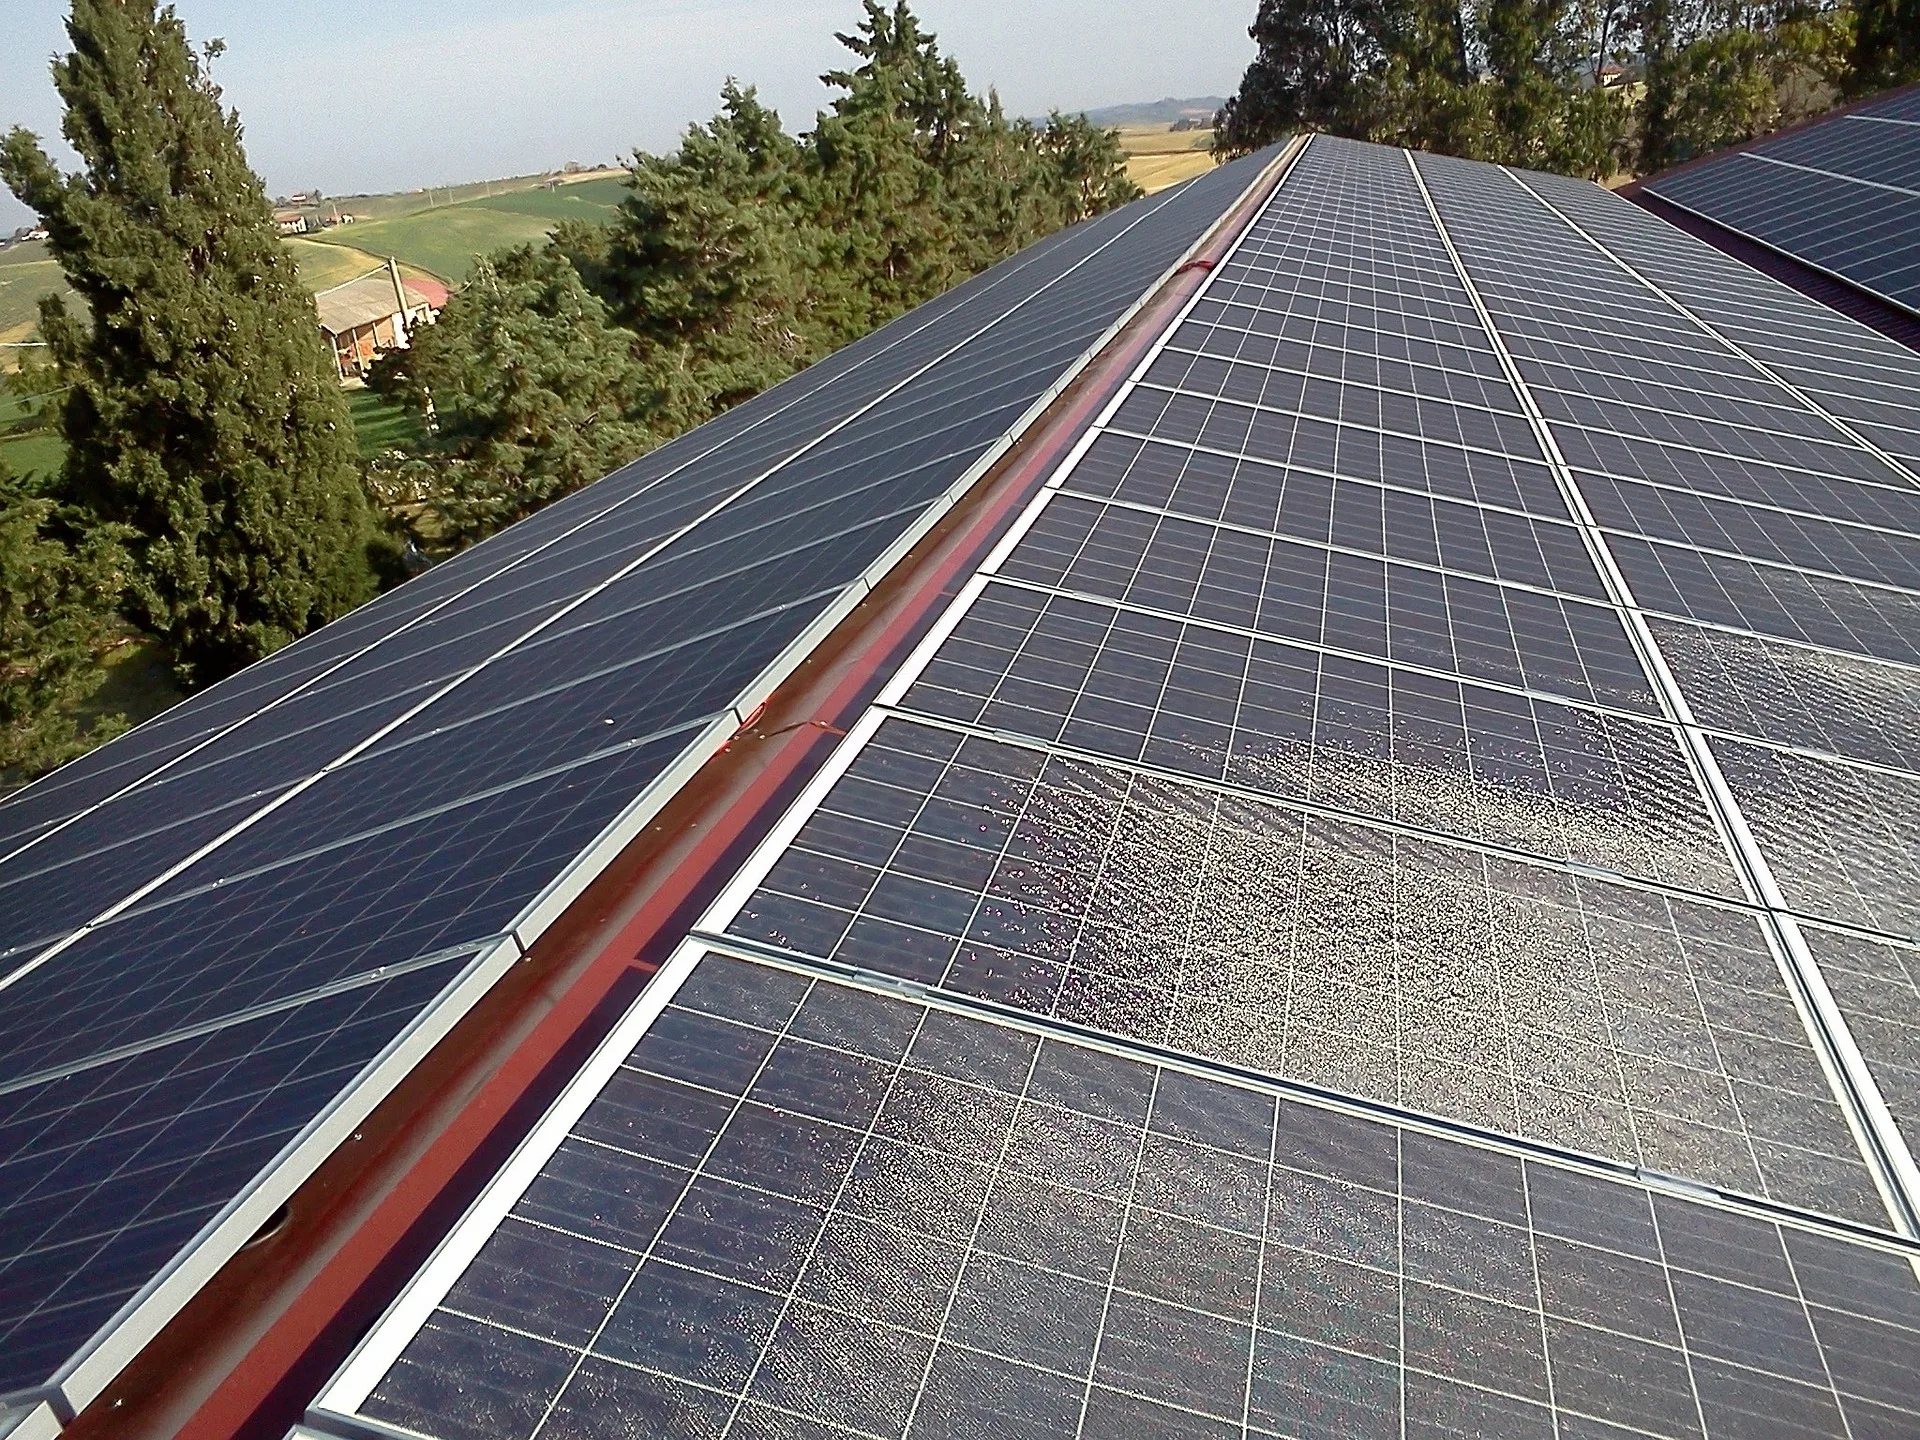 Libertad de amortización de instalaciones fotovoltaicas en empresas durante el año 2023